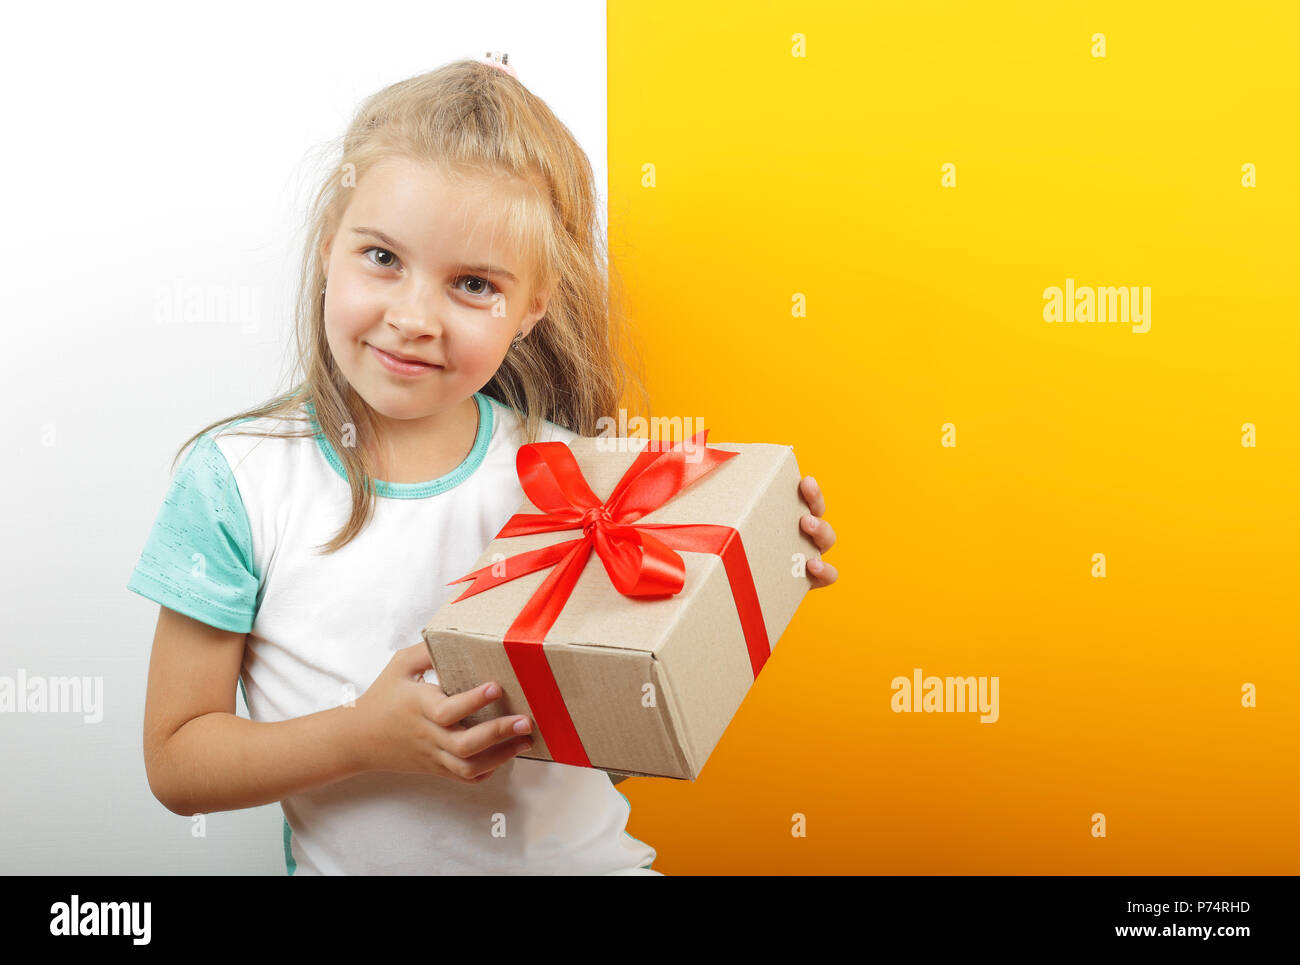 Geschenke, Shopping und präsentieren - Geschenkbox ist in den Händen des Mädchens auf einem gelben und weißen Hintergrund gebunden. Stockfoto